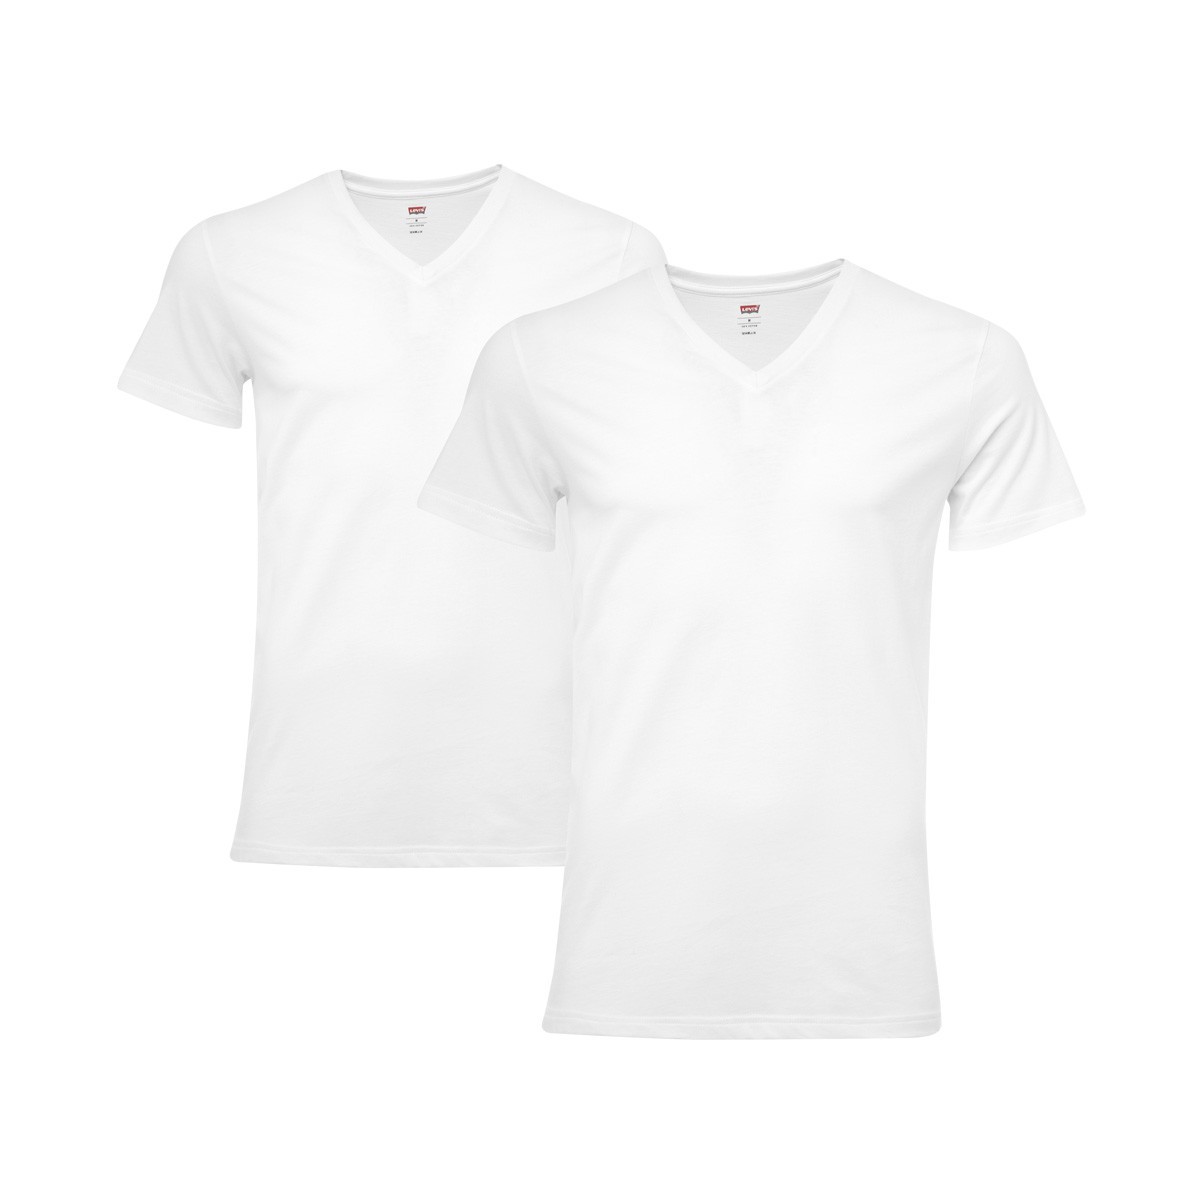 4 er Pack Levis V-Neck T-Shirt Men Herren Unterhemd V-Ausschnitt